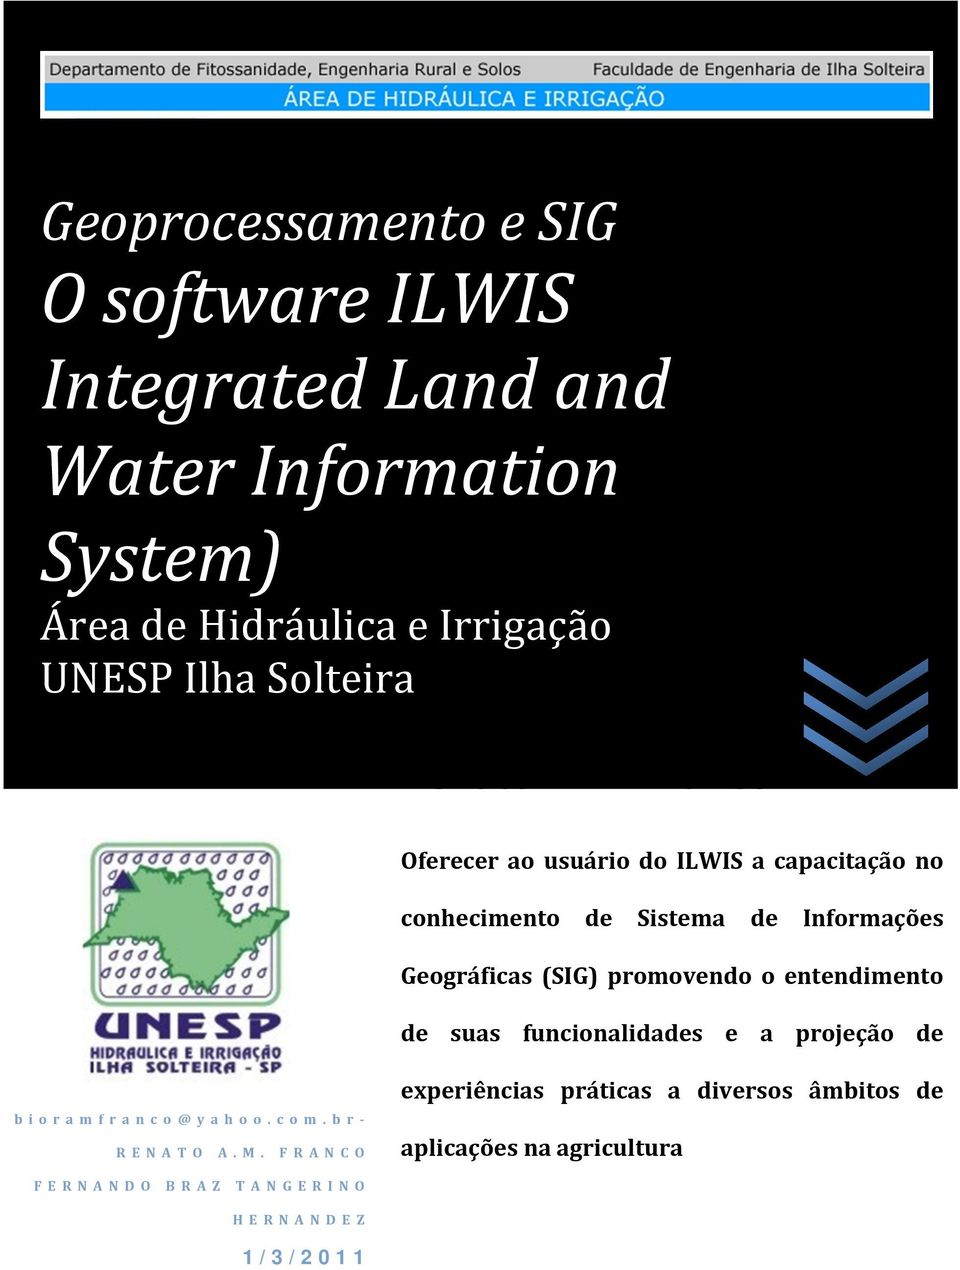 Franco Oferecer ao usuário do ILWIS a capacitação no conhecimento de Sistema de Informações Geográficas (SIG) promovendo o entendimento